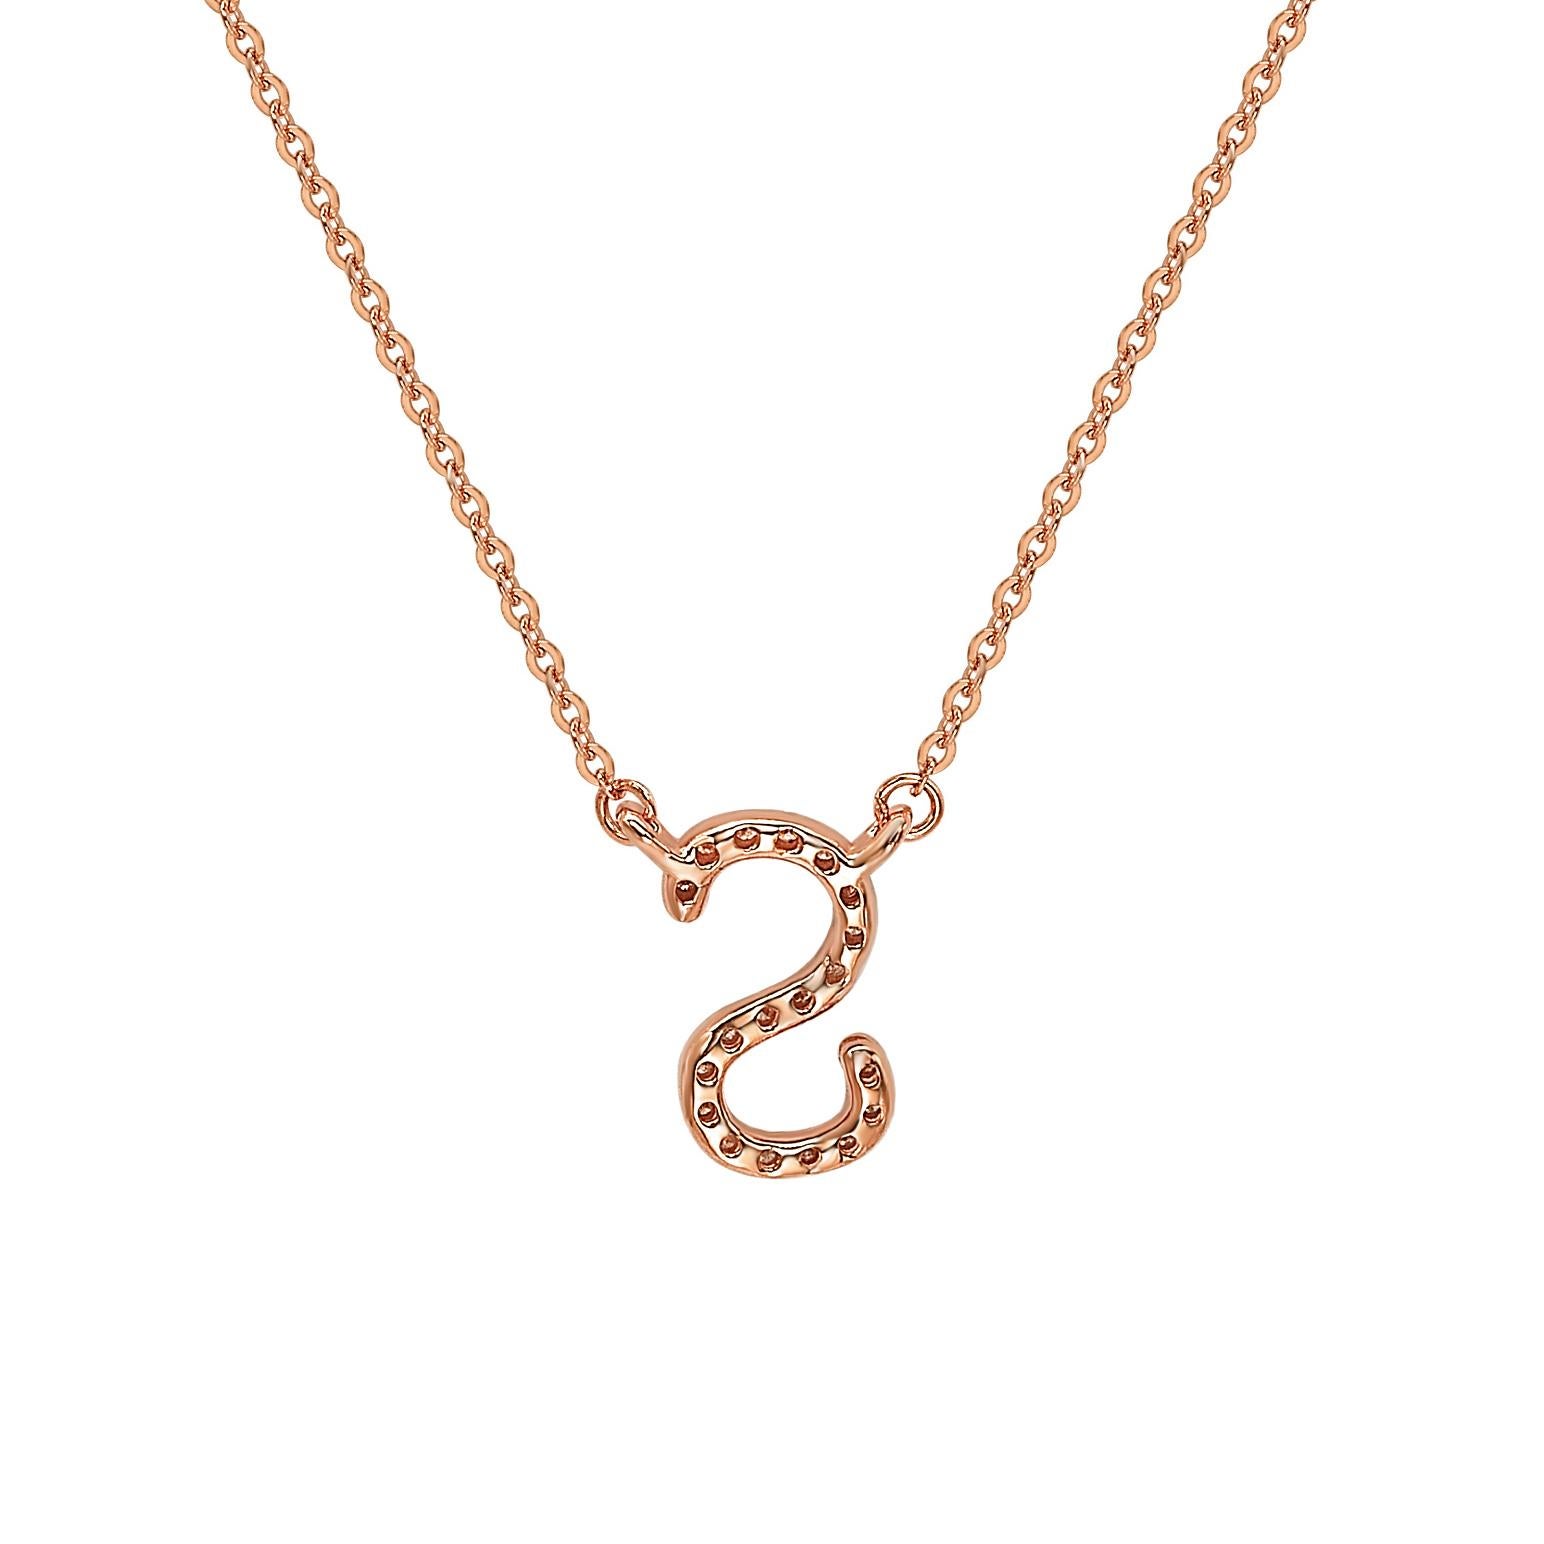 Diese atemberaubende, personalisierte Suzy Levian Brief-Halskette besteht aus natürlichen Diamanten, die von Hand in 14-karätiges Roségold gefasst wurden. Es ist das perfekte individuelle Geschenk, um jemandem mitzuteilen, dass man an ihn oder sie